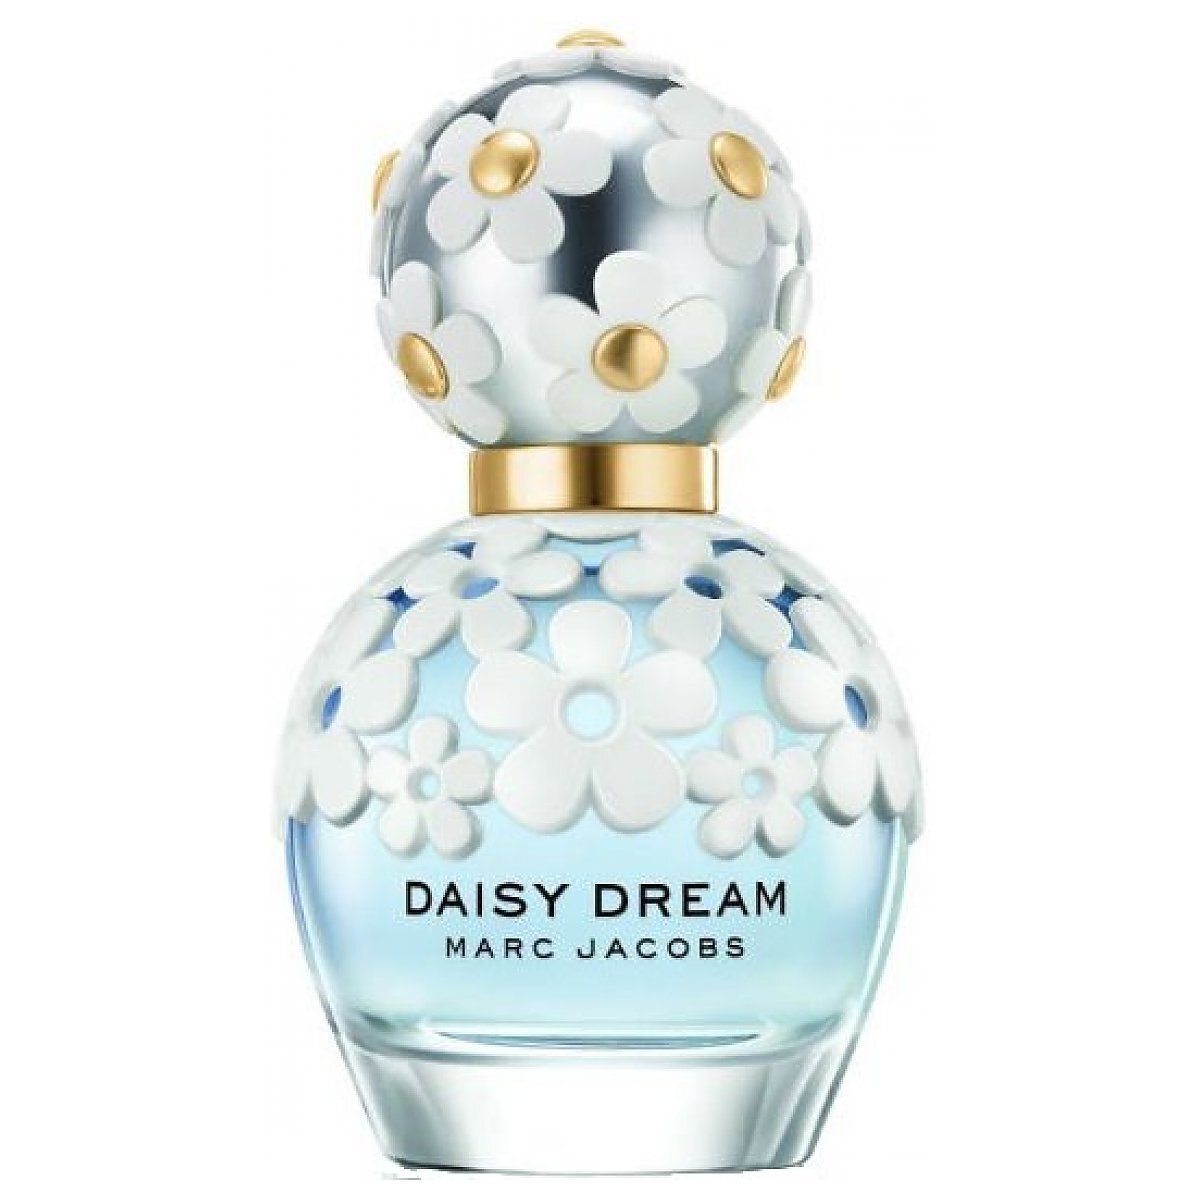 Marc Jacobs Daisy Dream Woda toaletowa spray 30ml - Perfumeria Dolce.pl